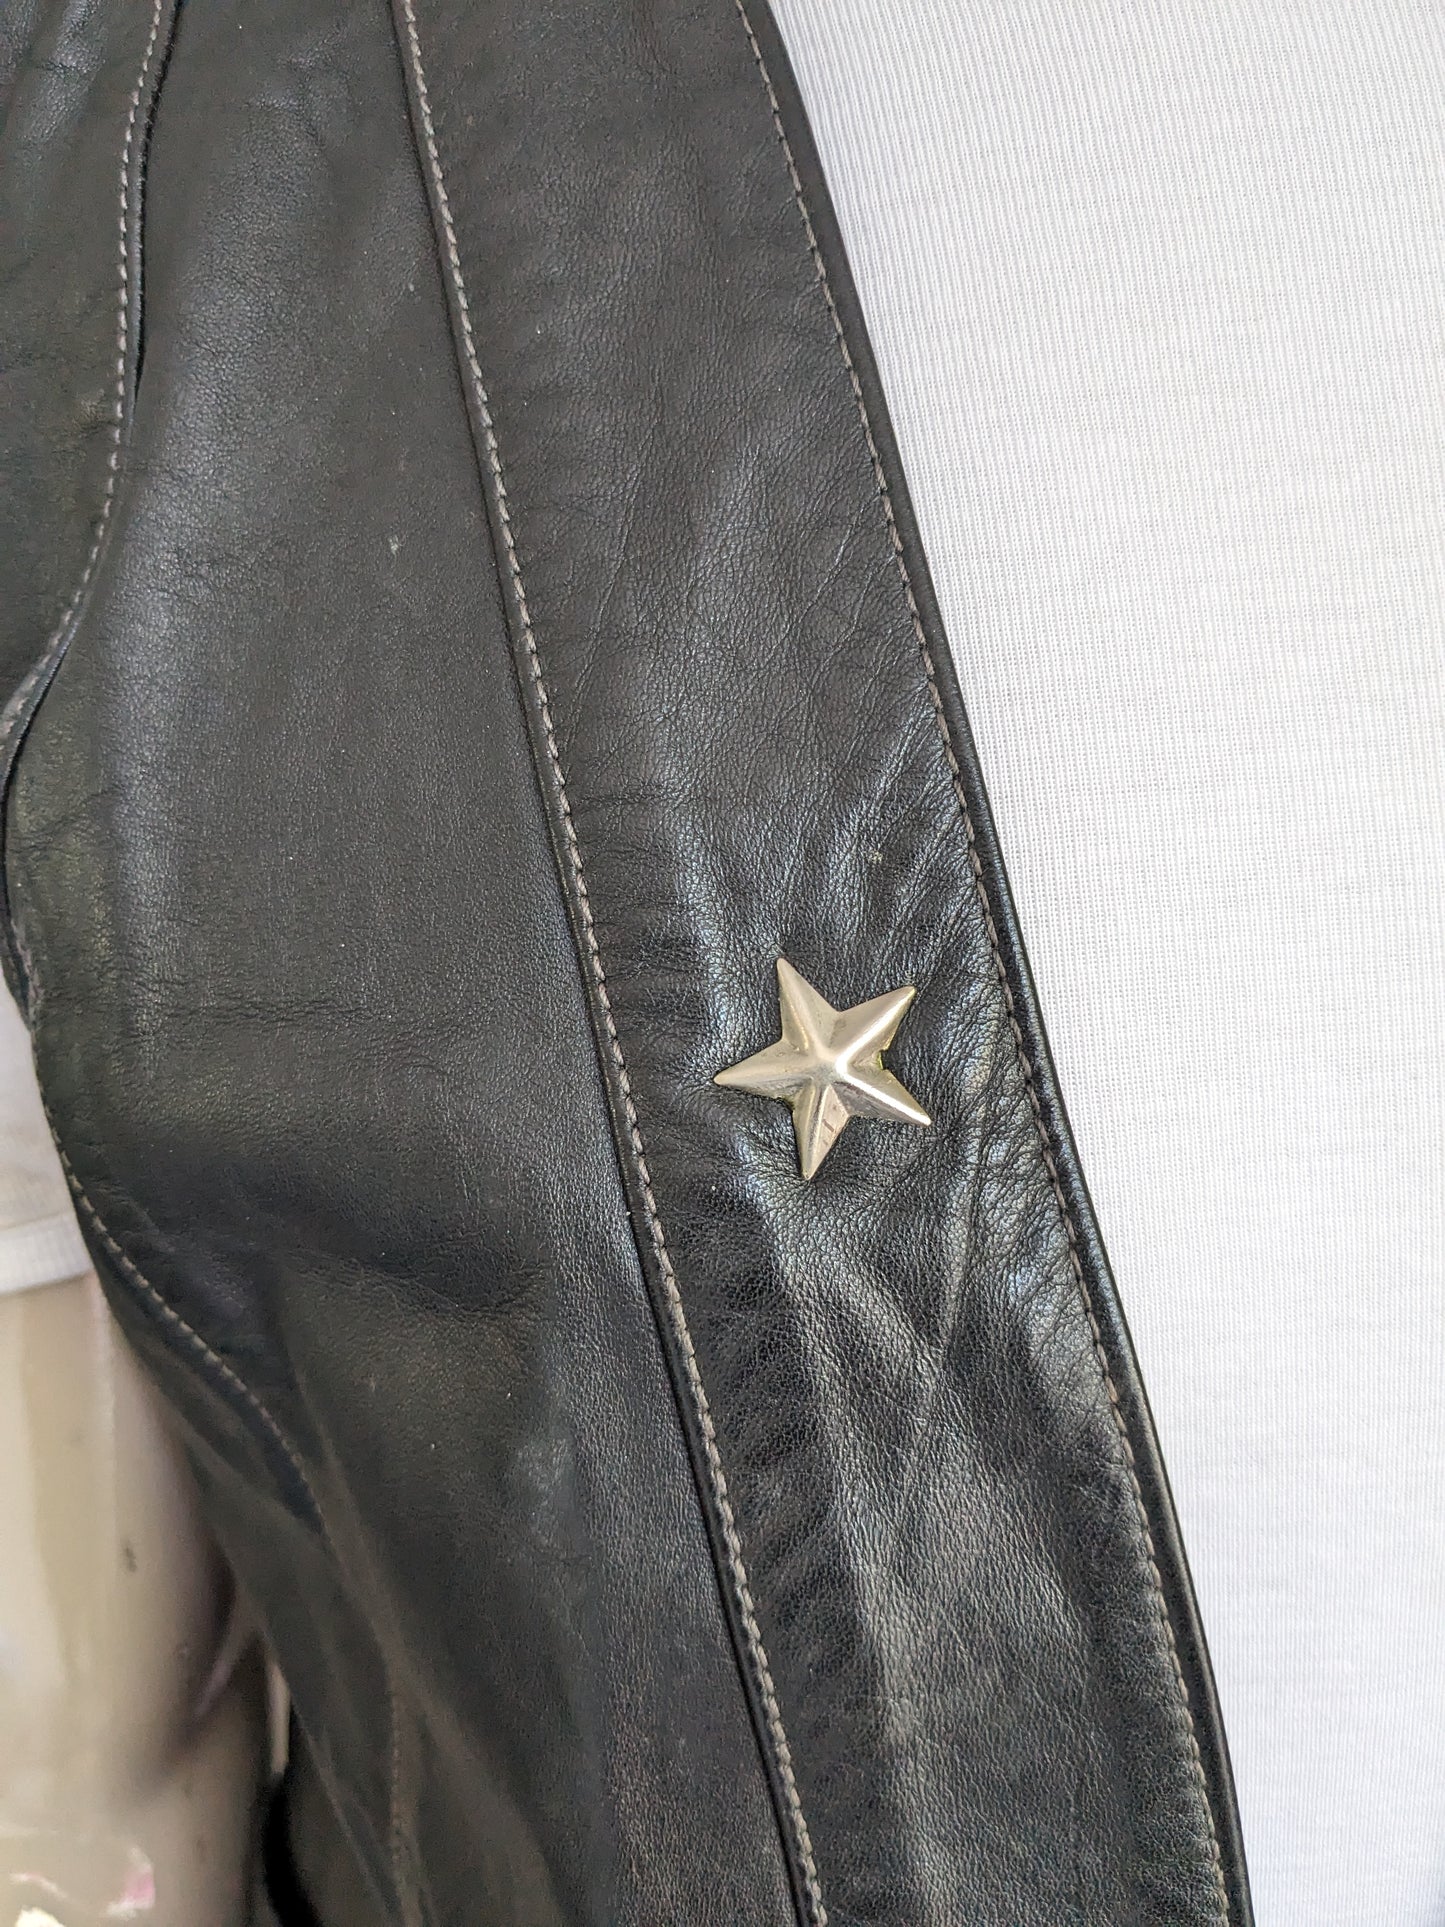 Lederweste ohne Schließung. Schwarz gefärbt mit silberfarbenem Stern. Größe M / L.